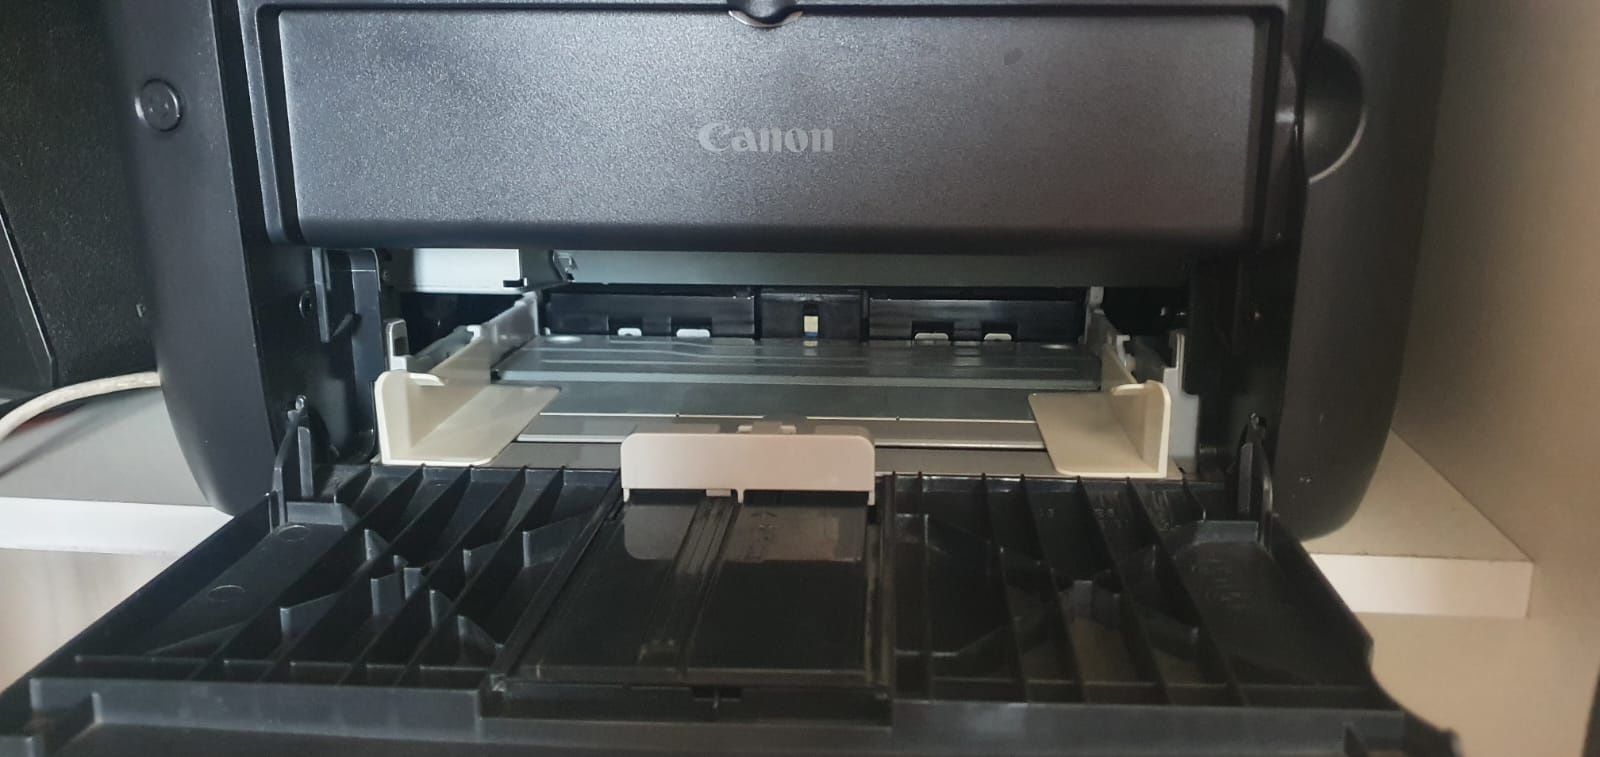 Продам надежный лазерный принтер canon